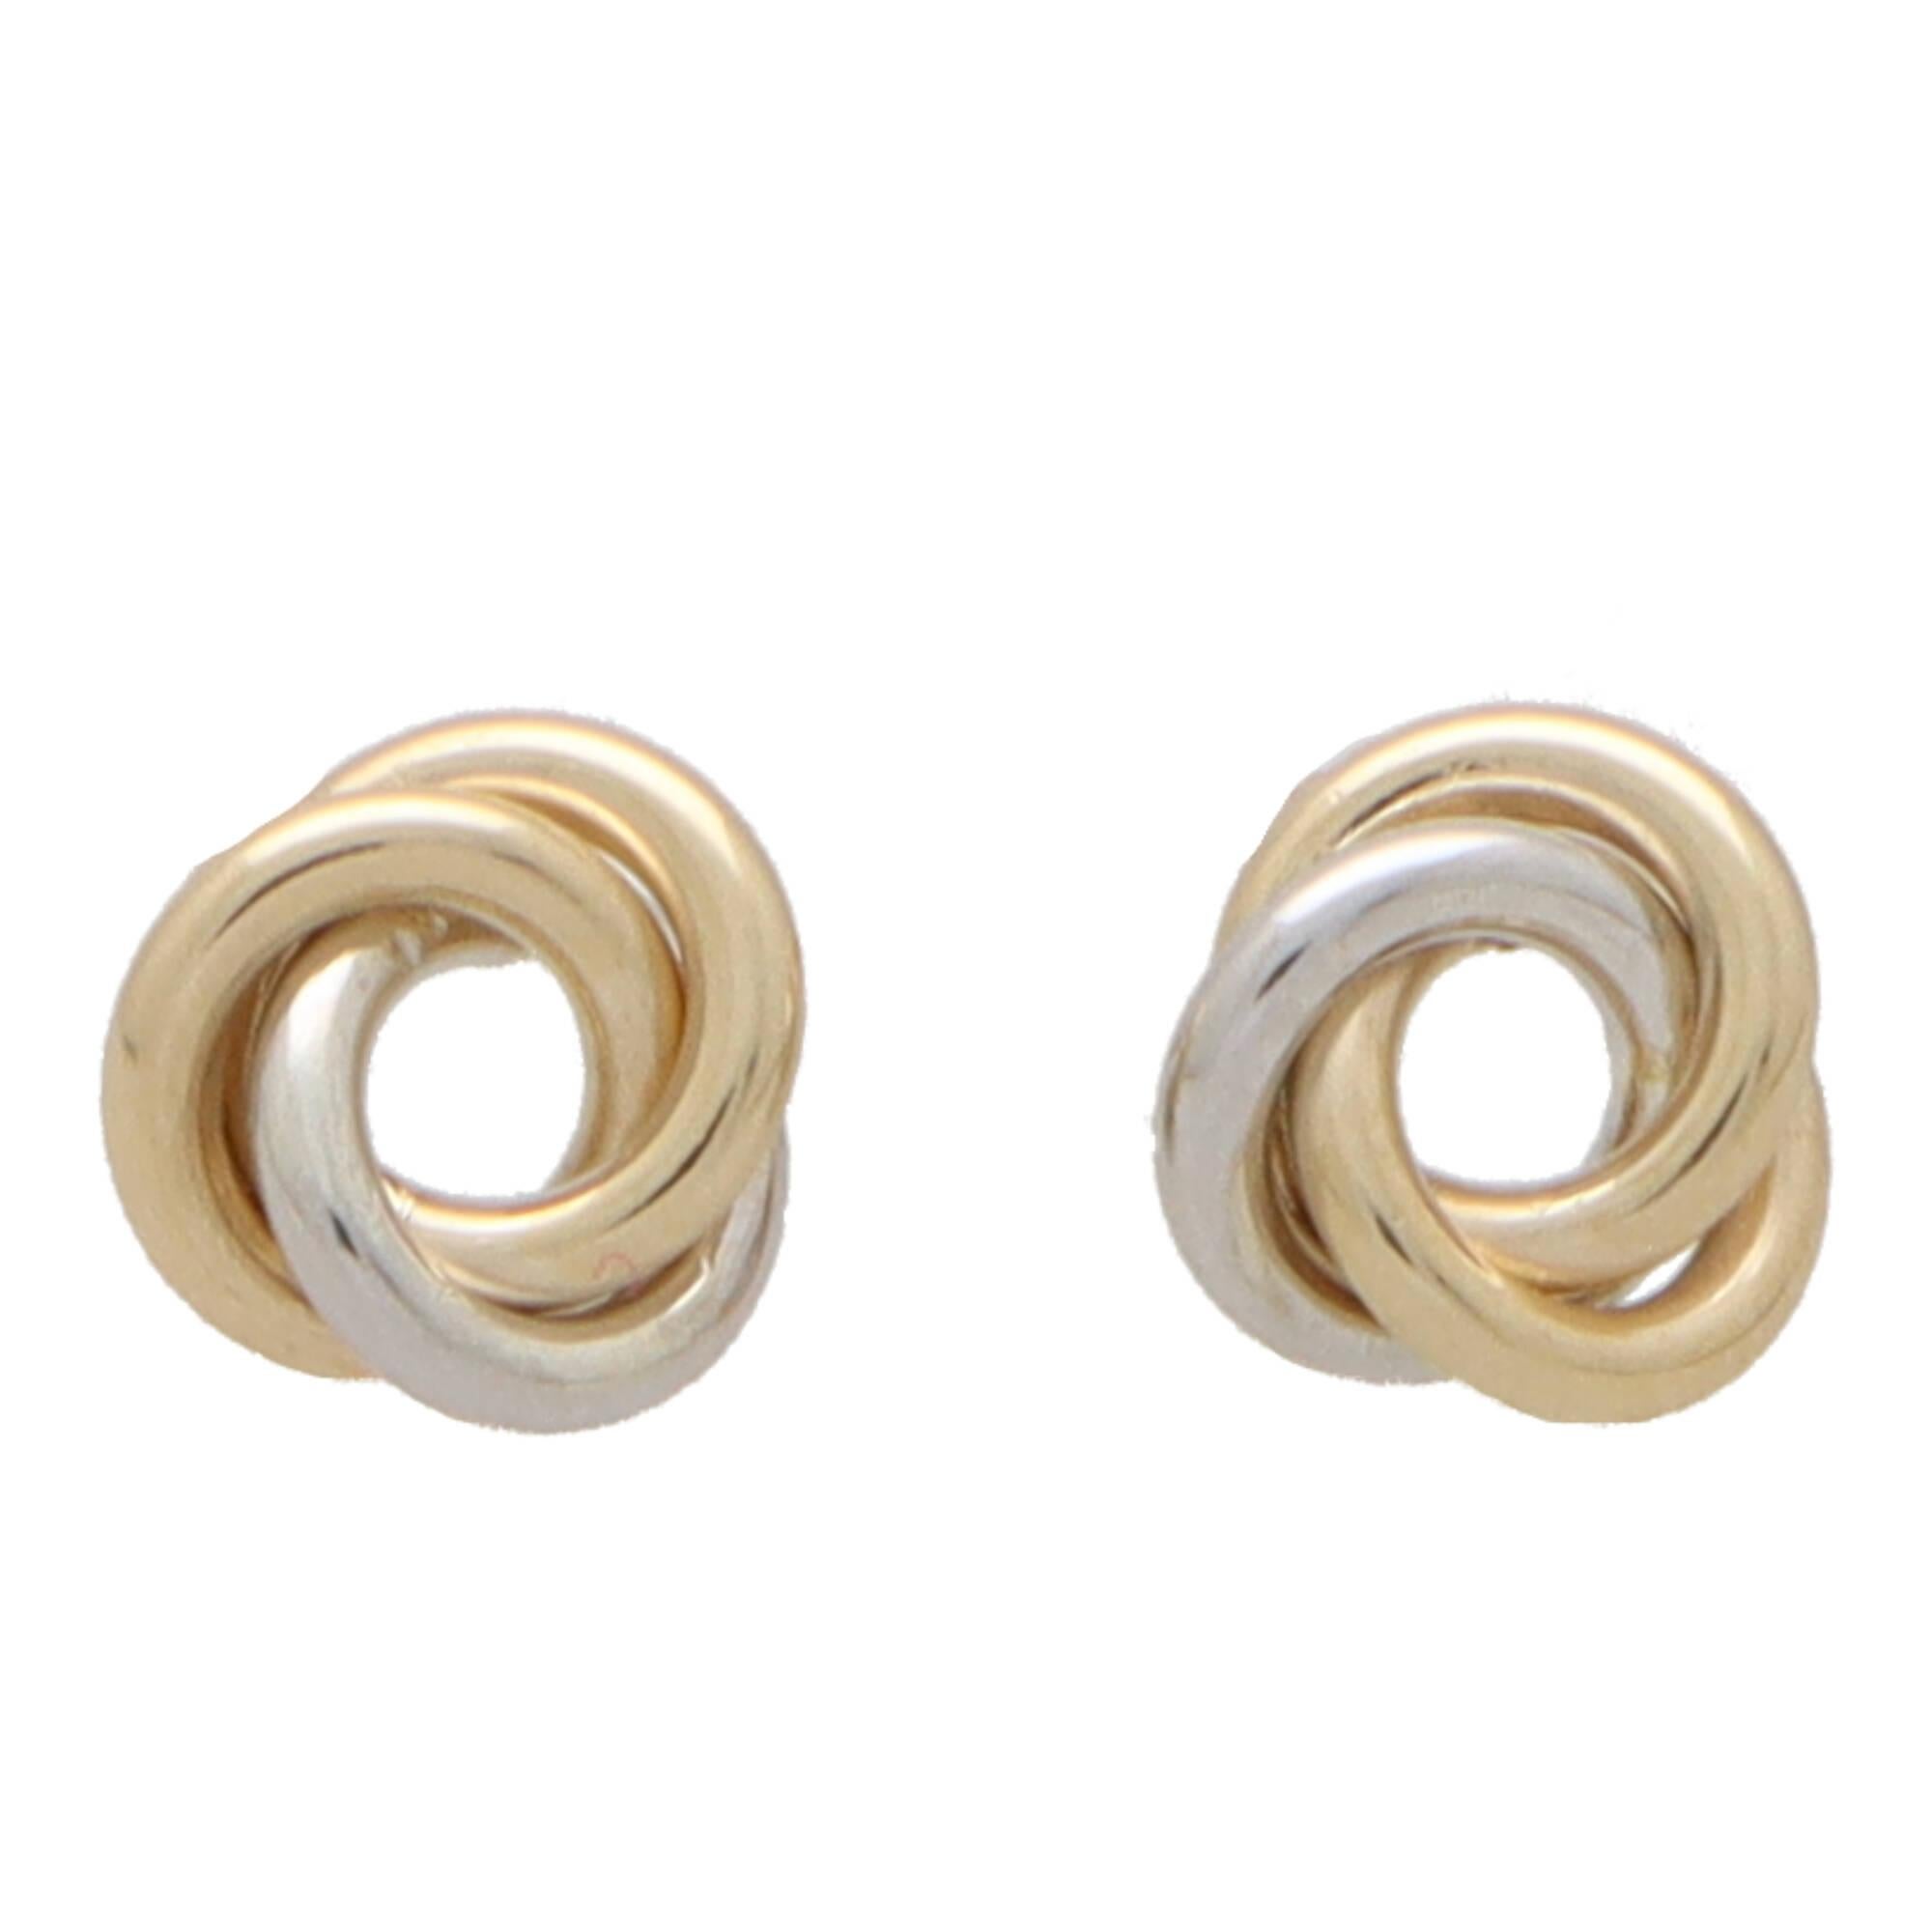  Une belle paire de boucles d'oreilles trinité vintage en or jaune, rose et blanc 9k.

Chaque boucle d'oreille représente un nœud trinitaire tressé et est fixée au revers par une tige en or massif et un raccord papillon.

Grâce à leur design et à